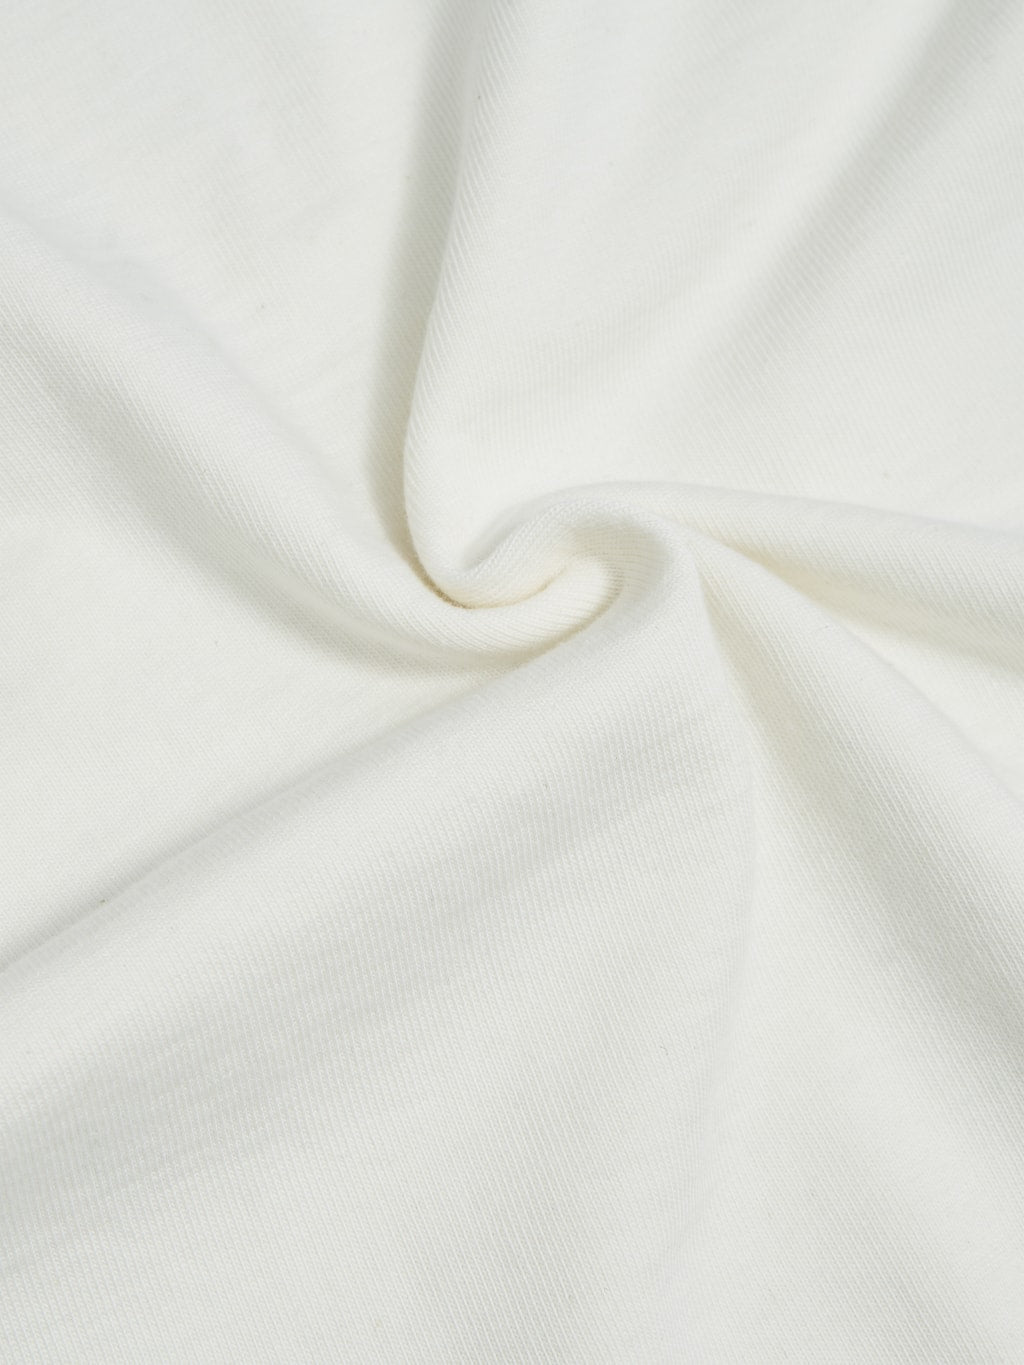 Studio DArtisan Suvin Gold Loopwheeled Tshirt white texture